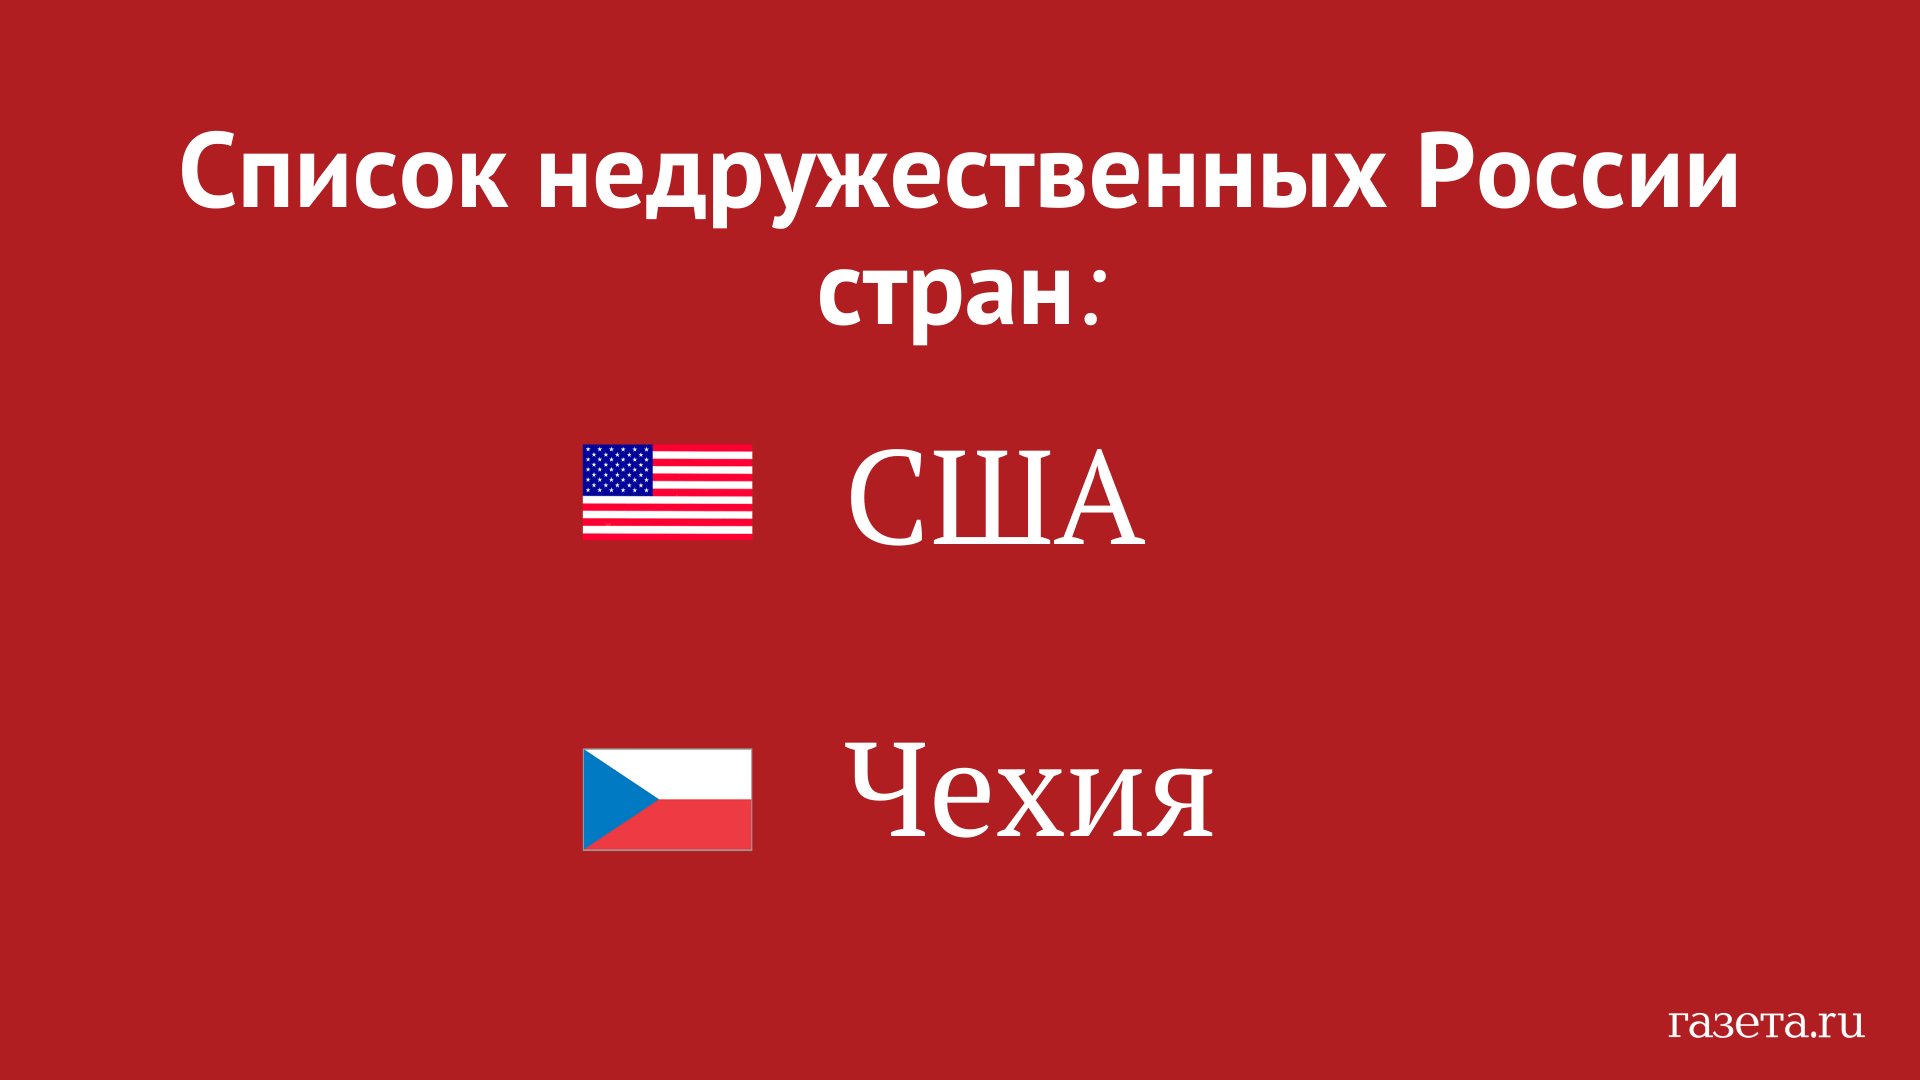 Газета.Ru on X: Правительство РФ утвердило список недружественных стран. В  нем две страны – США и Чехия (по крайней мере пока).  https://t.co/RvSMRvhUrj / X